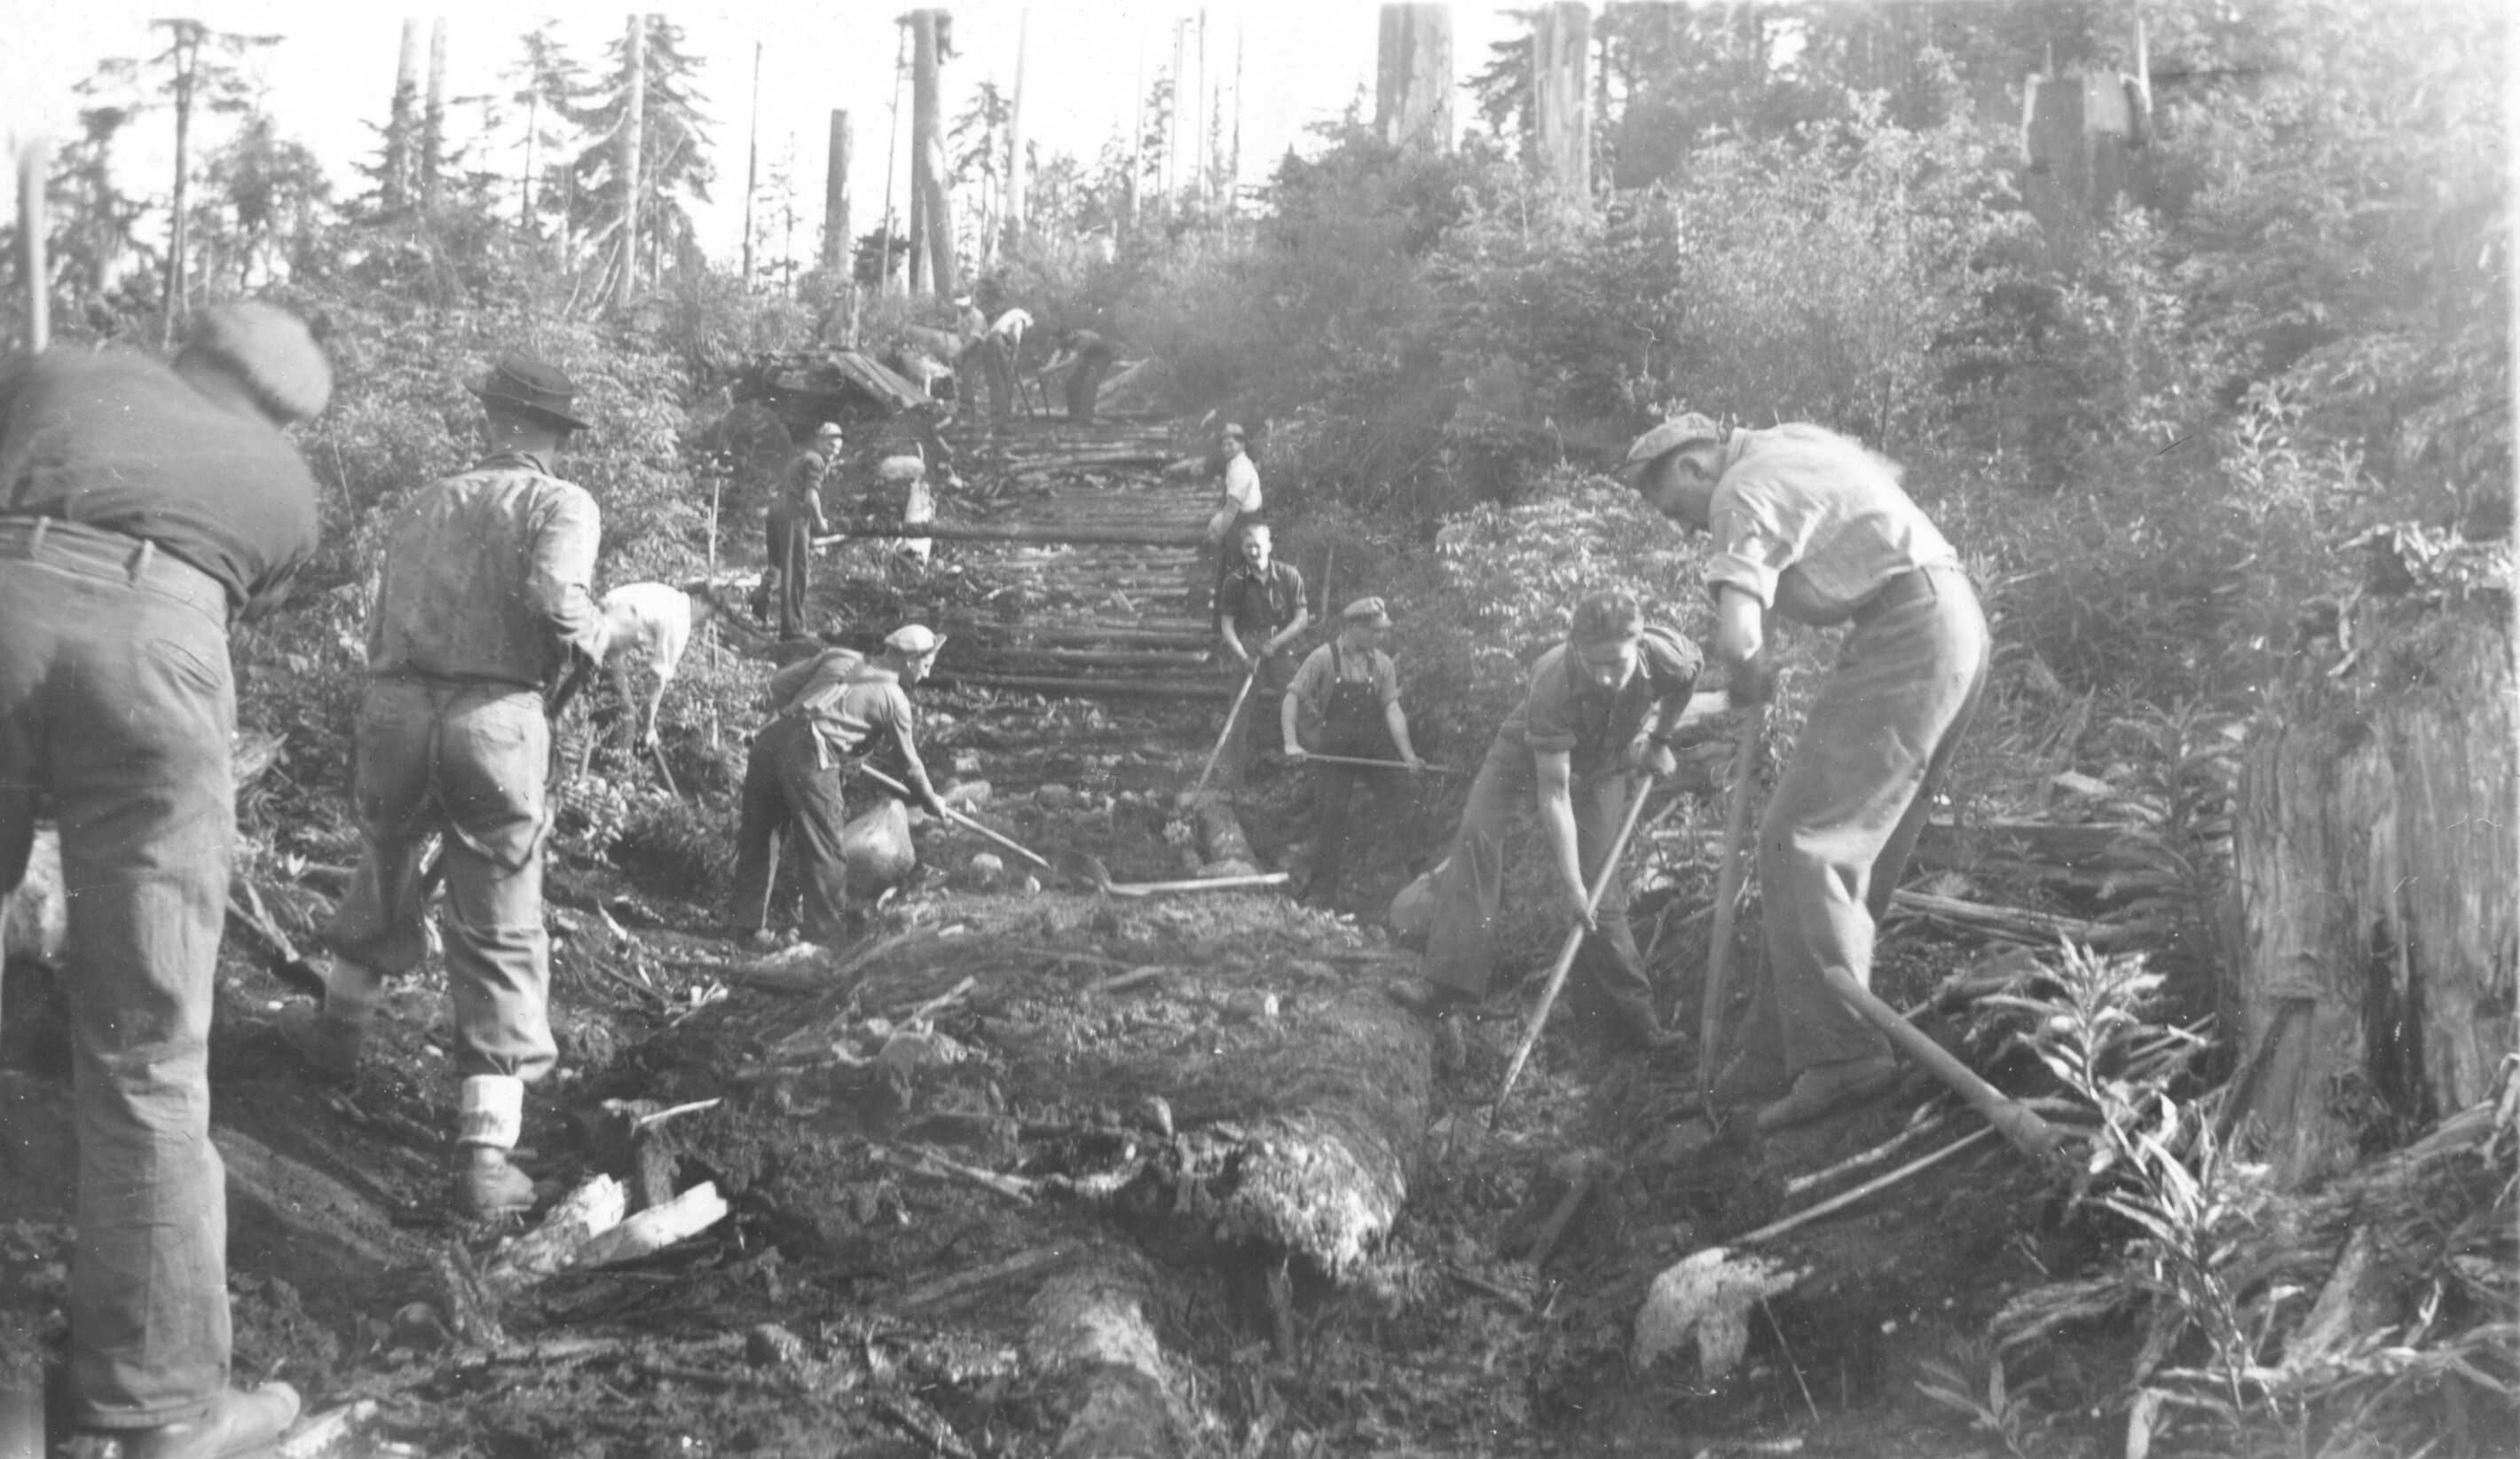 Photographie en noir et blanc – Des hommes sont photographiés en train de défricher un sentier à travers une forêt pour construire une route.